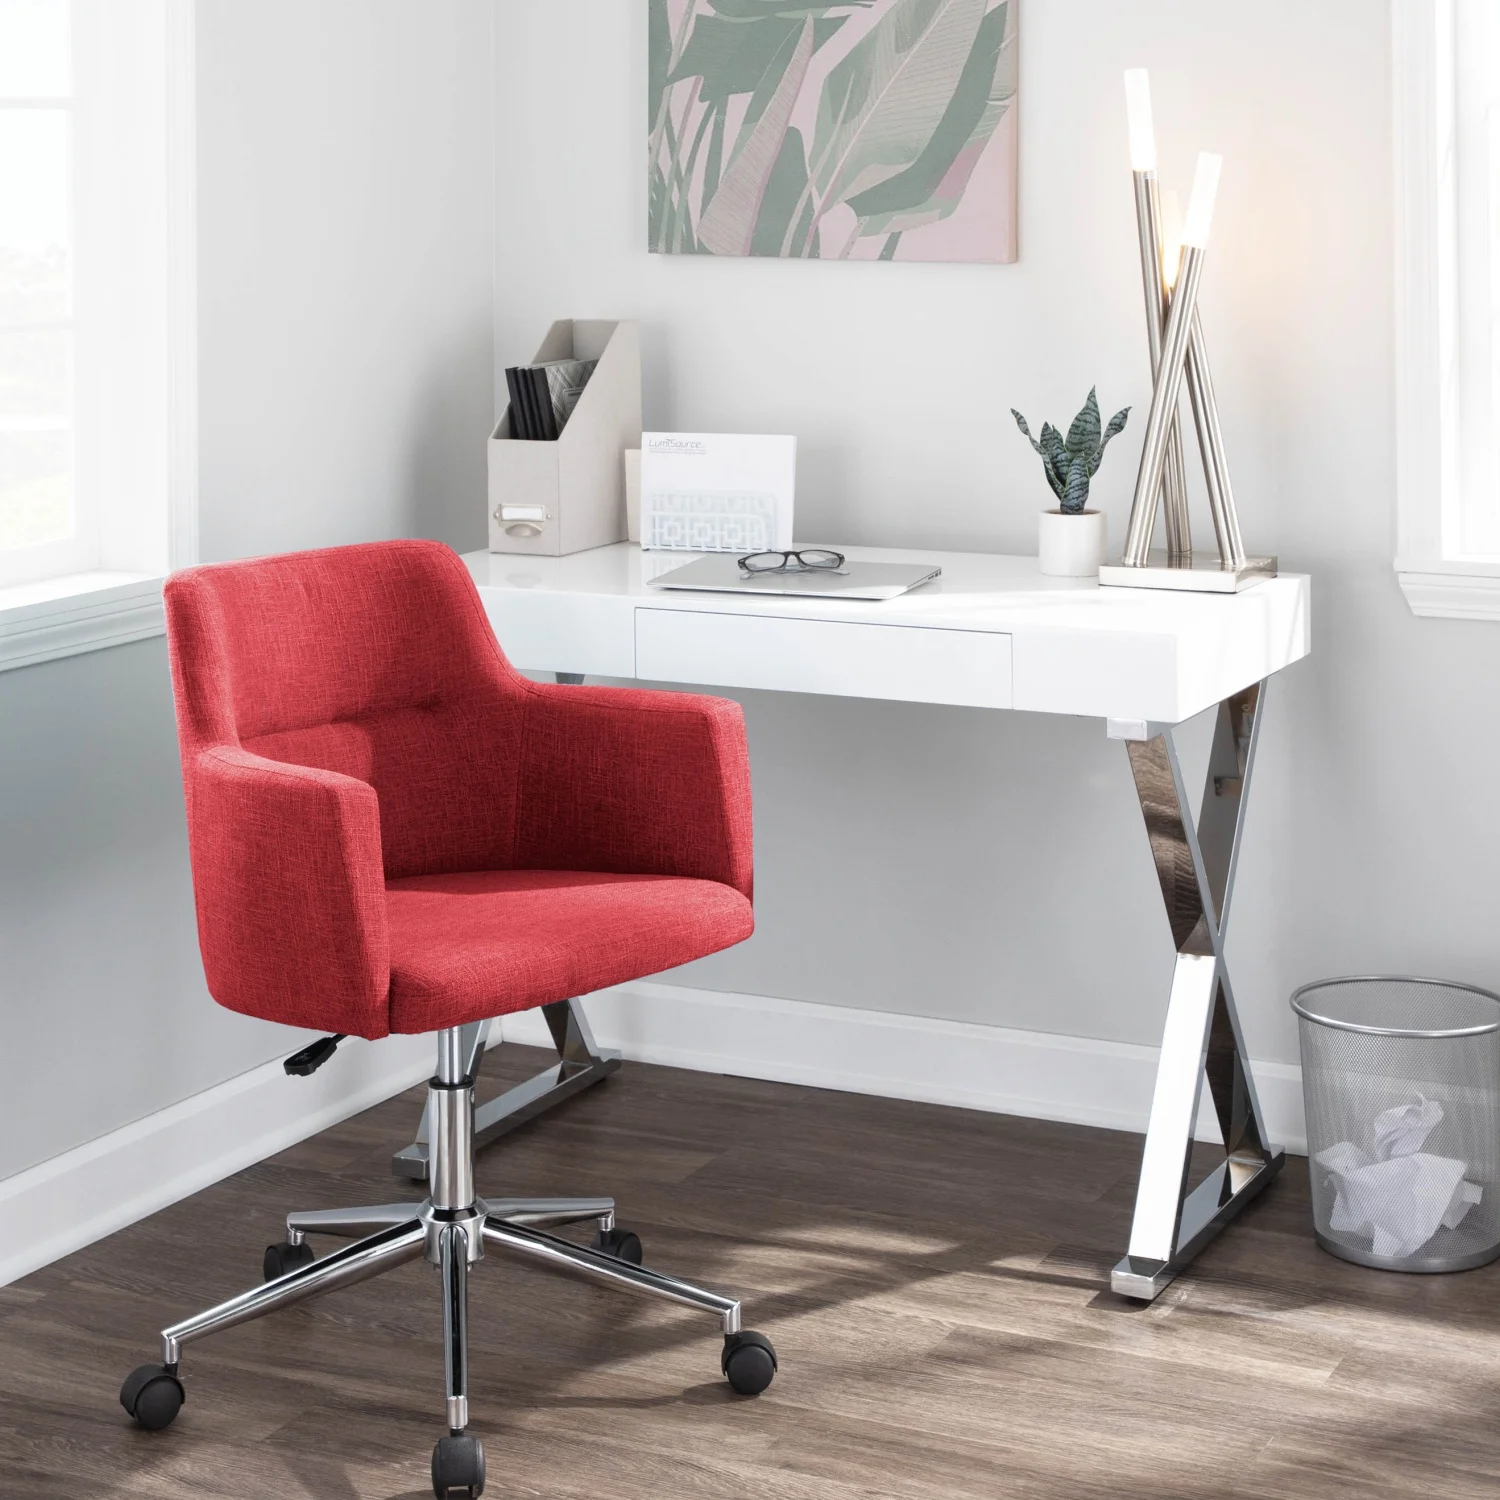 Kursi kantor merah kontemporer, dengan desain Modern dan dukungan ergonomis dari LumiSource